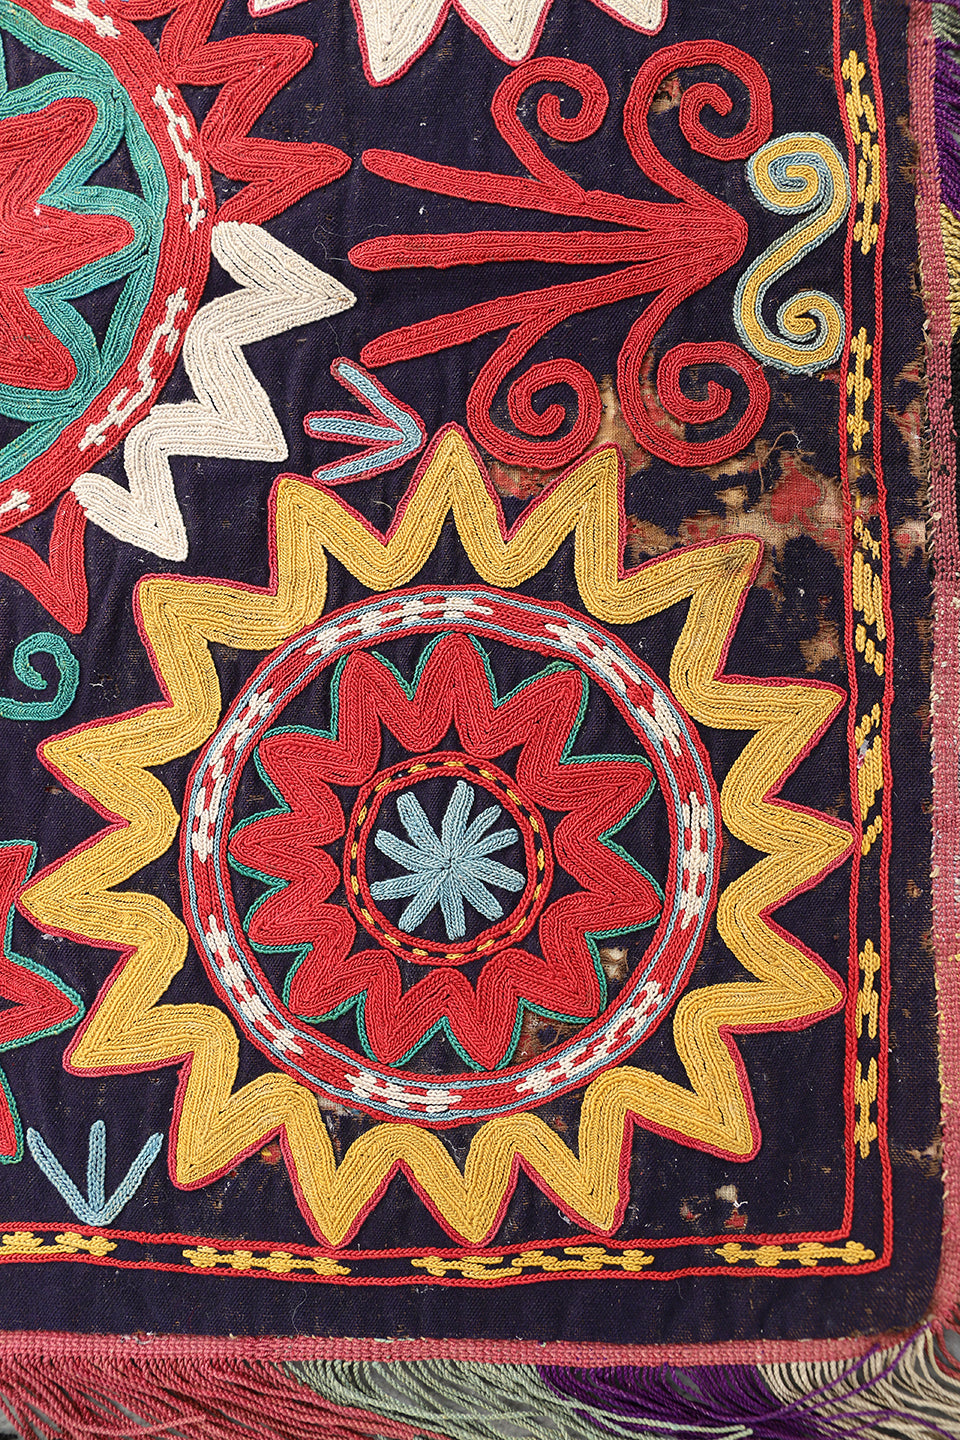 2'x2' Antique Afghan Uzbek Laqai Hand Embroidery Decorative Textile